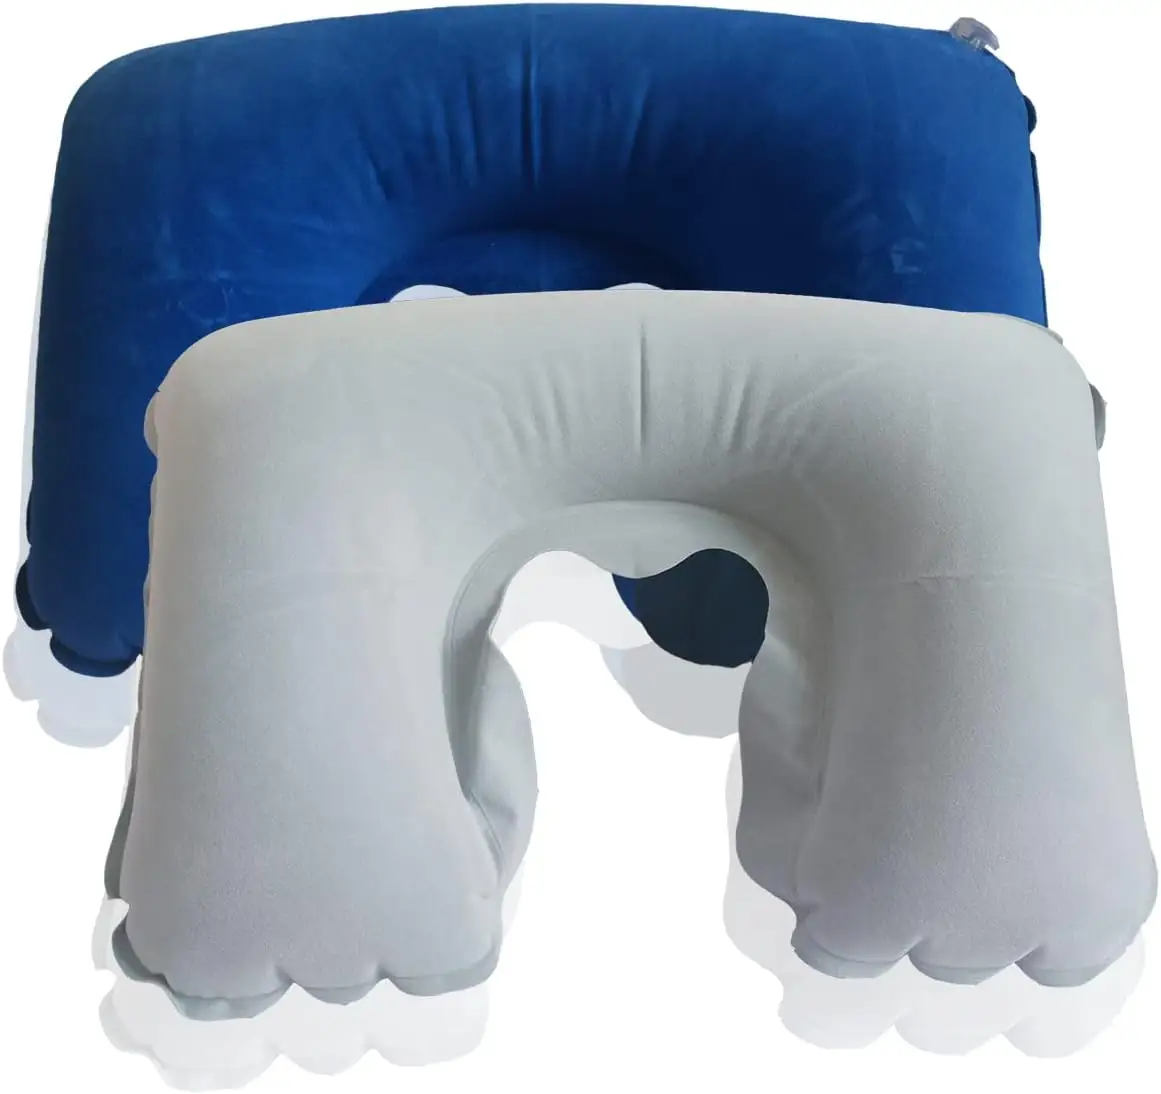 U-образная надувная дорожная подушка для шеи из ПВХ воздушная подушка для путешествий